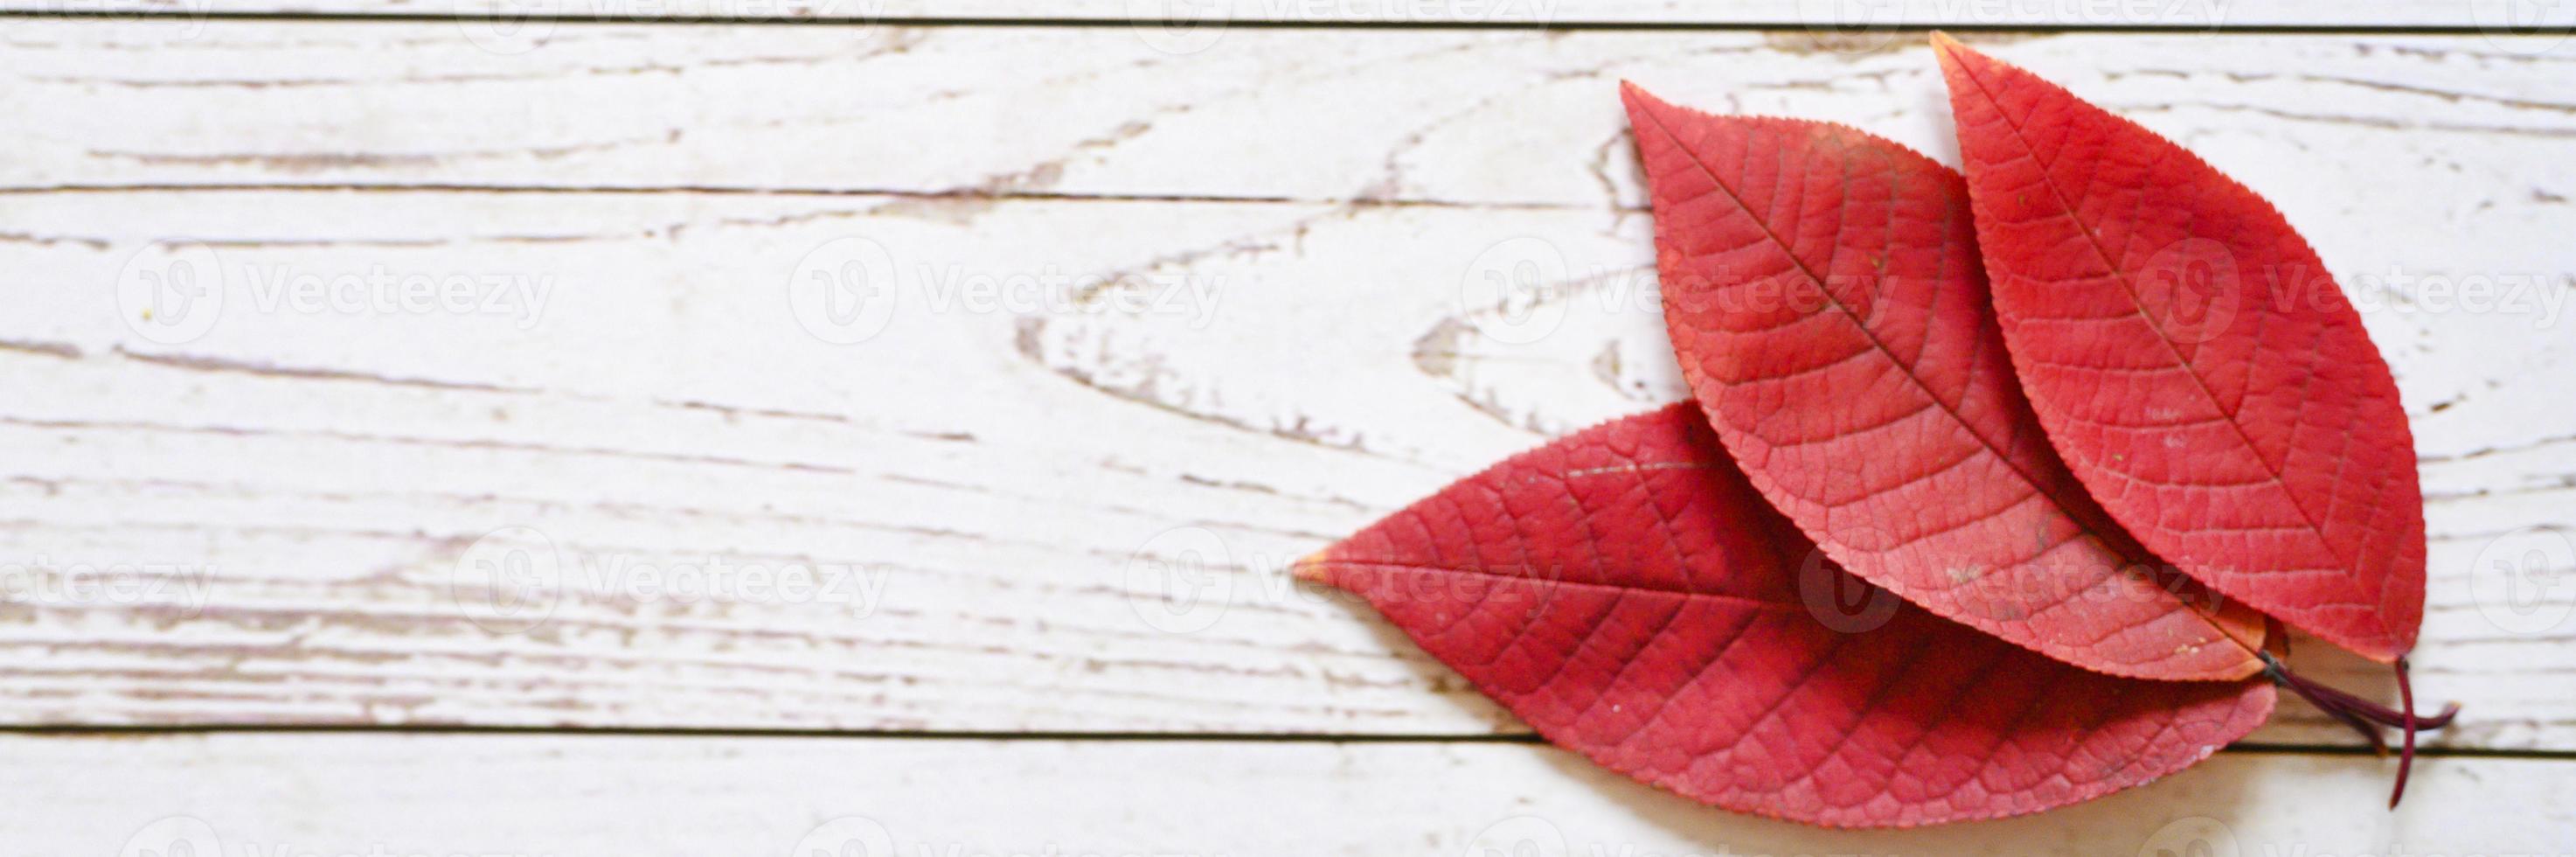 diverse foglie cadute autunno rosso su uno sfondo di tavola di legno chiaro foto